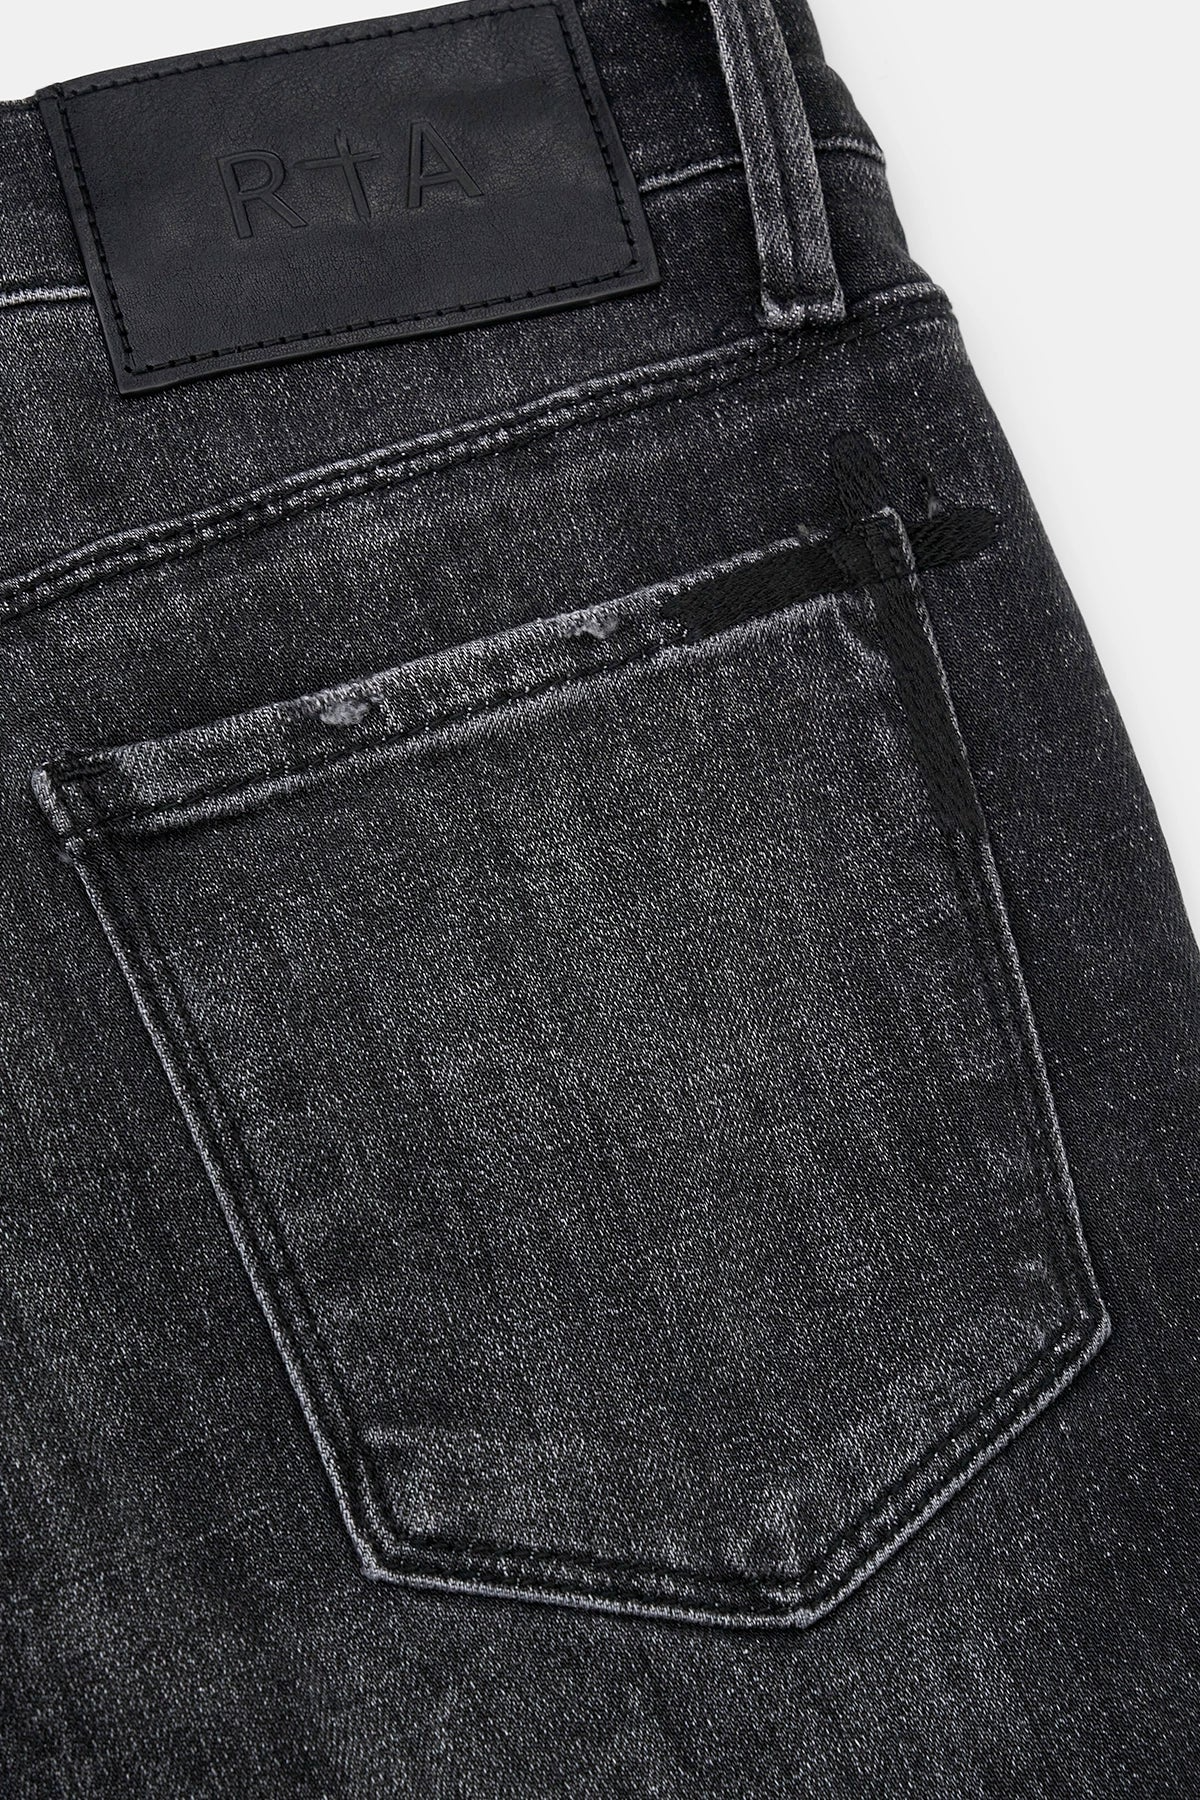 rta-mens-bryant-skinny-denim-jeans-pant-mh24d623-b1205disgr